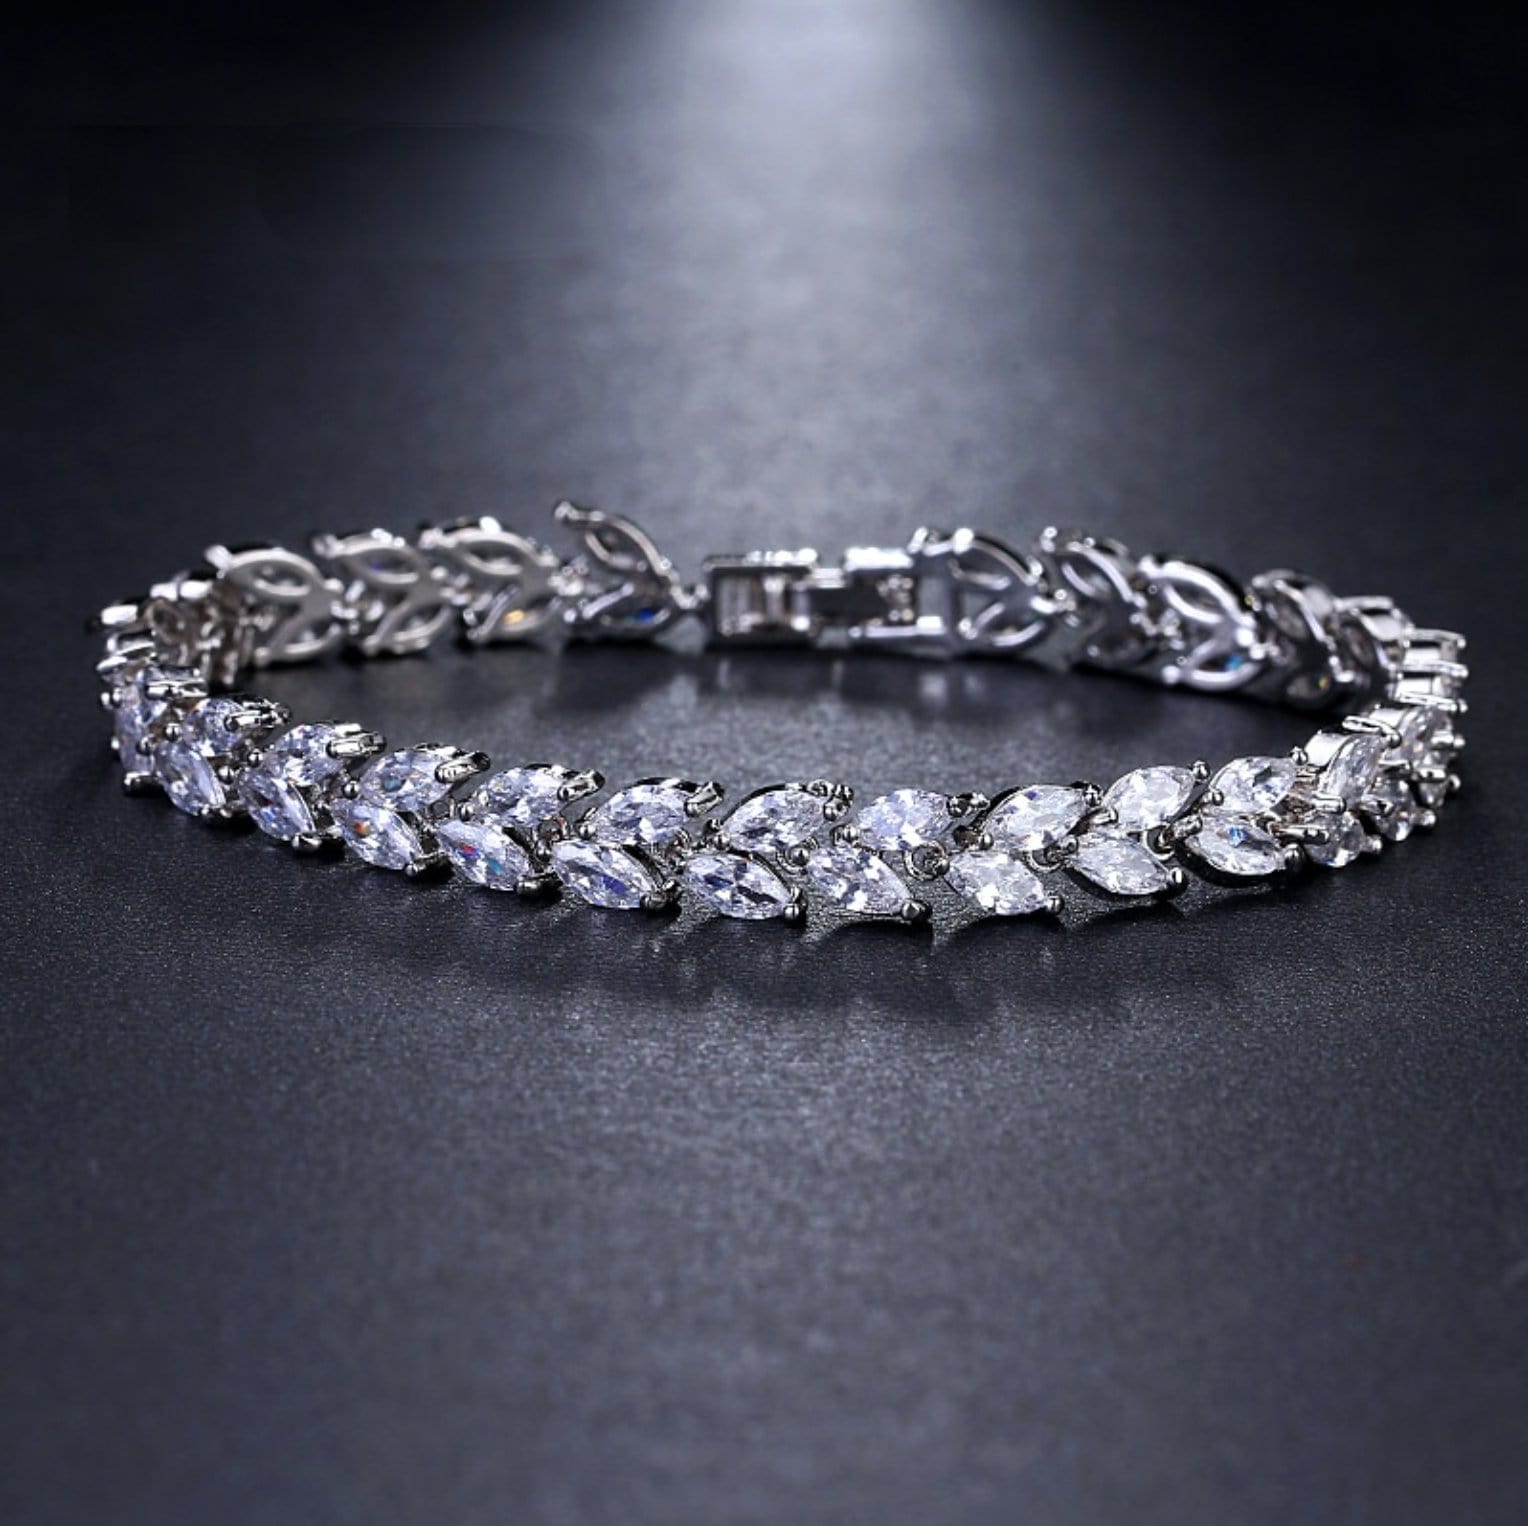 The Erika Leaf Bracelet - I Spy Jewelry